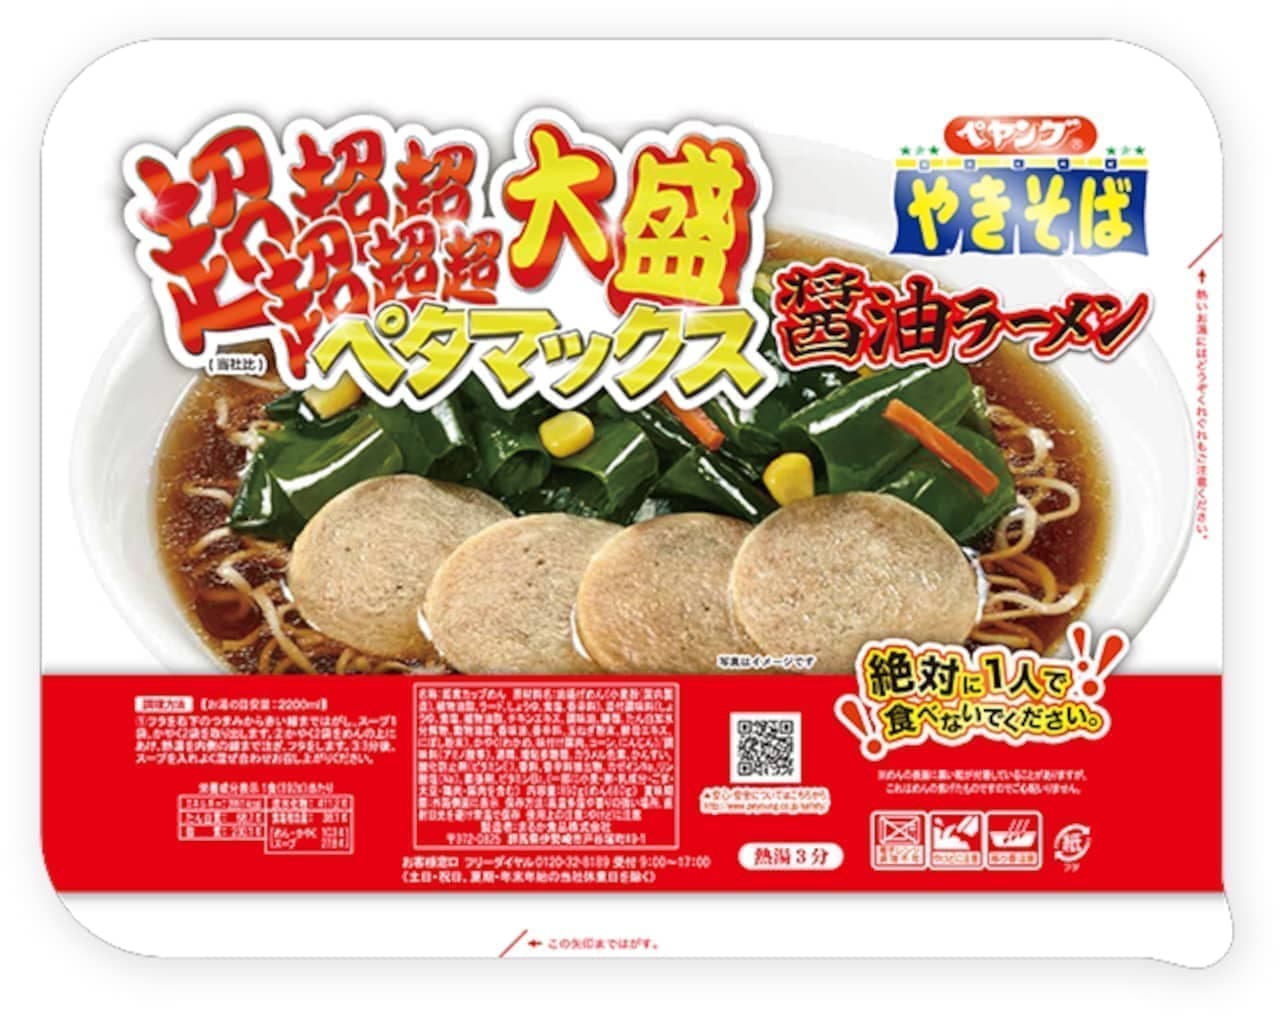 Maruka Foods "Peyoung Super Super Super Super Super Super Large Petamax Soy Sauce Ramen" "Peyoung Super Super Super Super Super Large Petamax Spicy Miso Ramen"